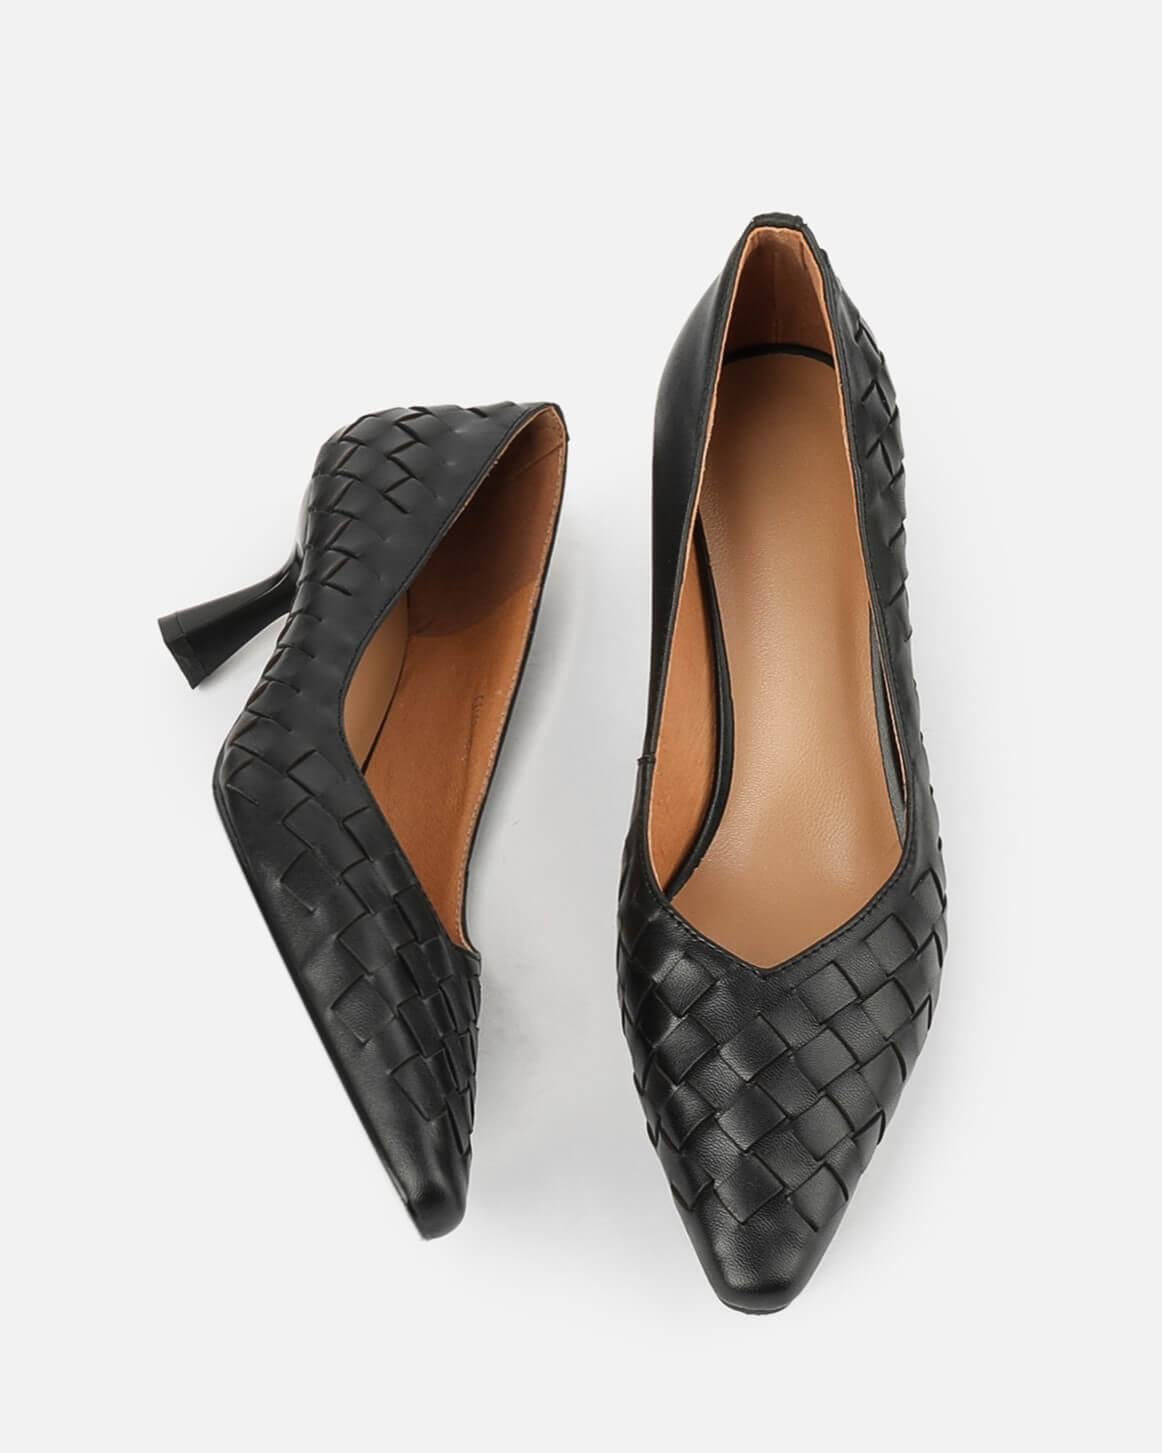 Misora-lambskin-woven-heels-black-3